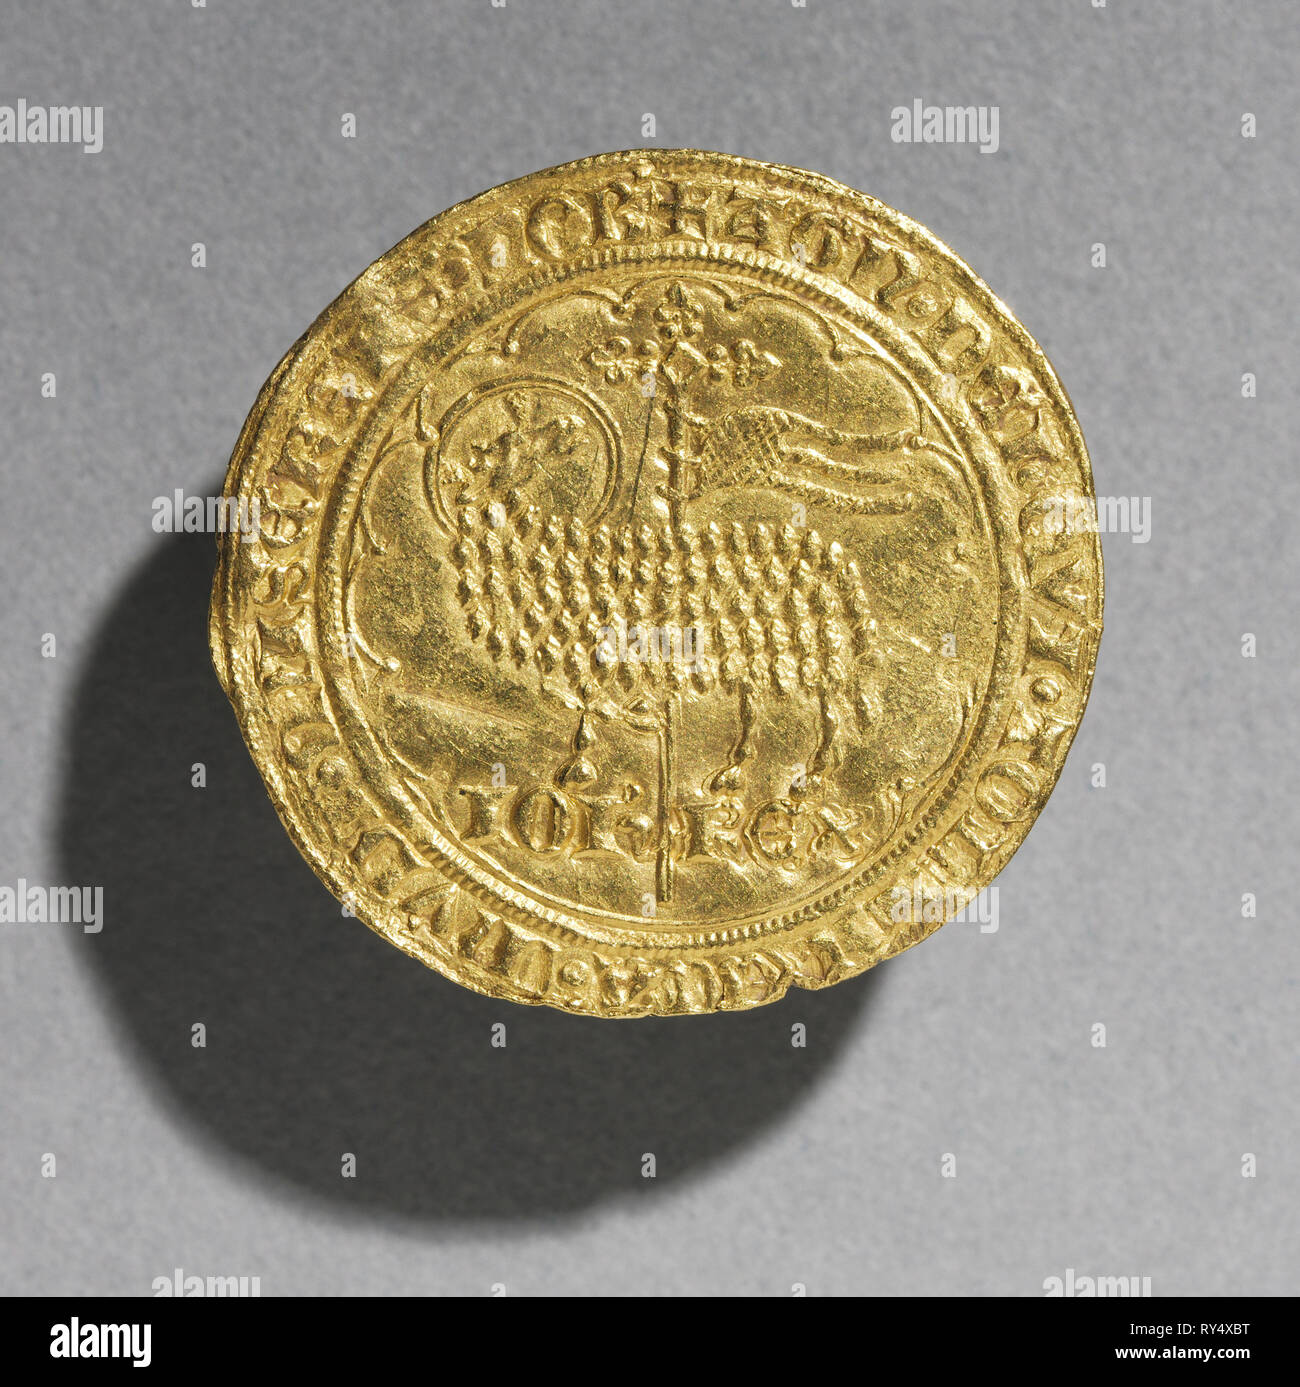 Mouton d'Or de Jean le Bon roi de France, 1350-1364 (avers), 1350-1364. La France, de l'époque gothique, 14e siècle. Or, diamètre : 3.1 cm (1 1/4 in Banque D'Images